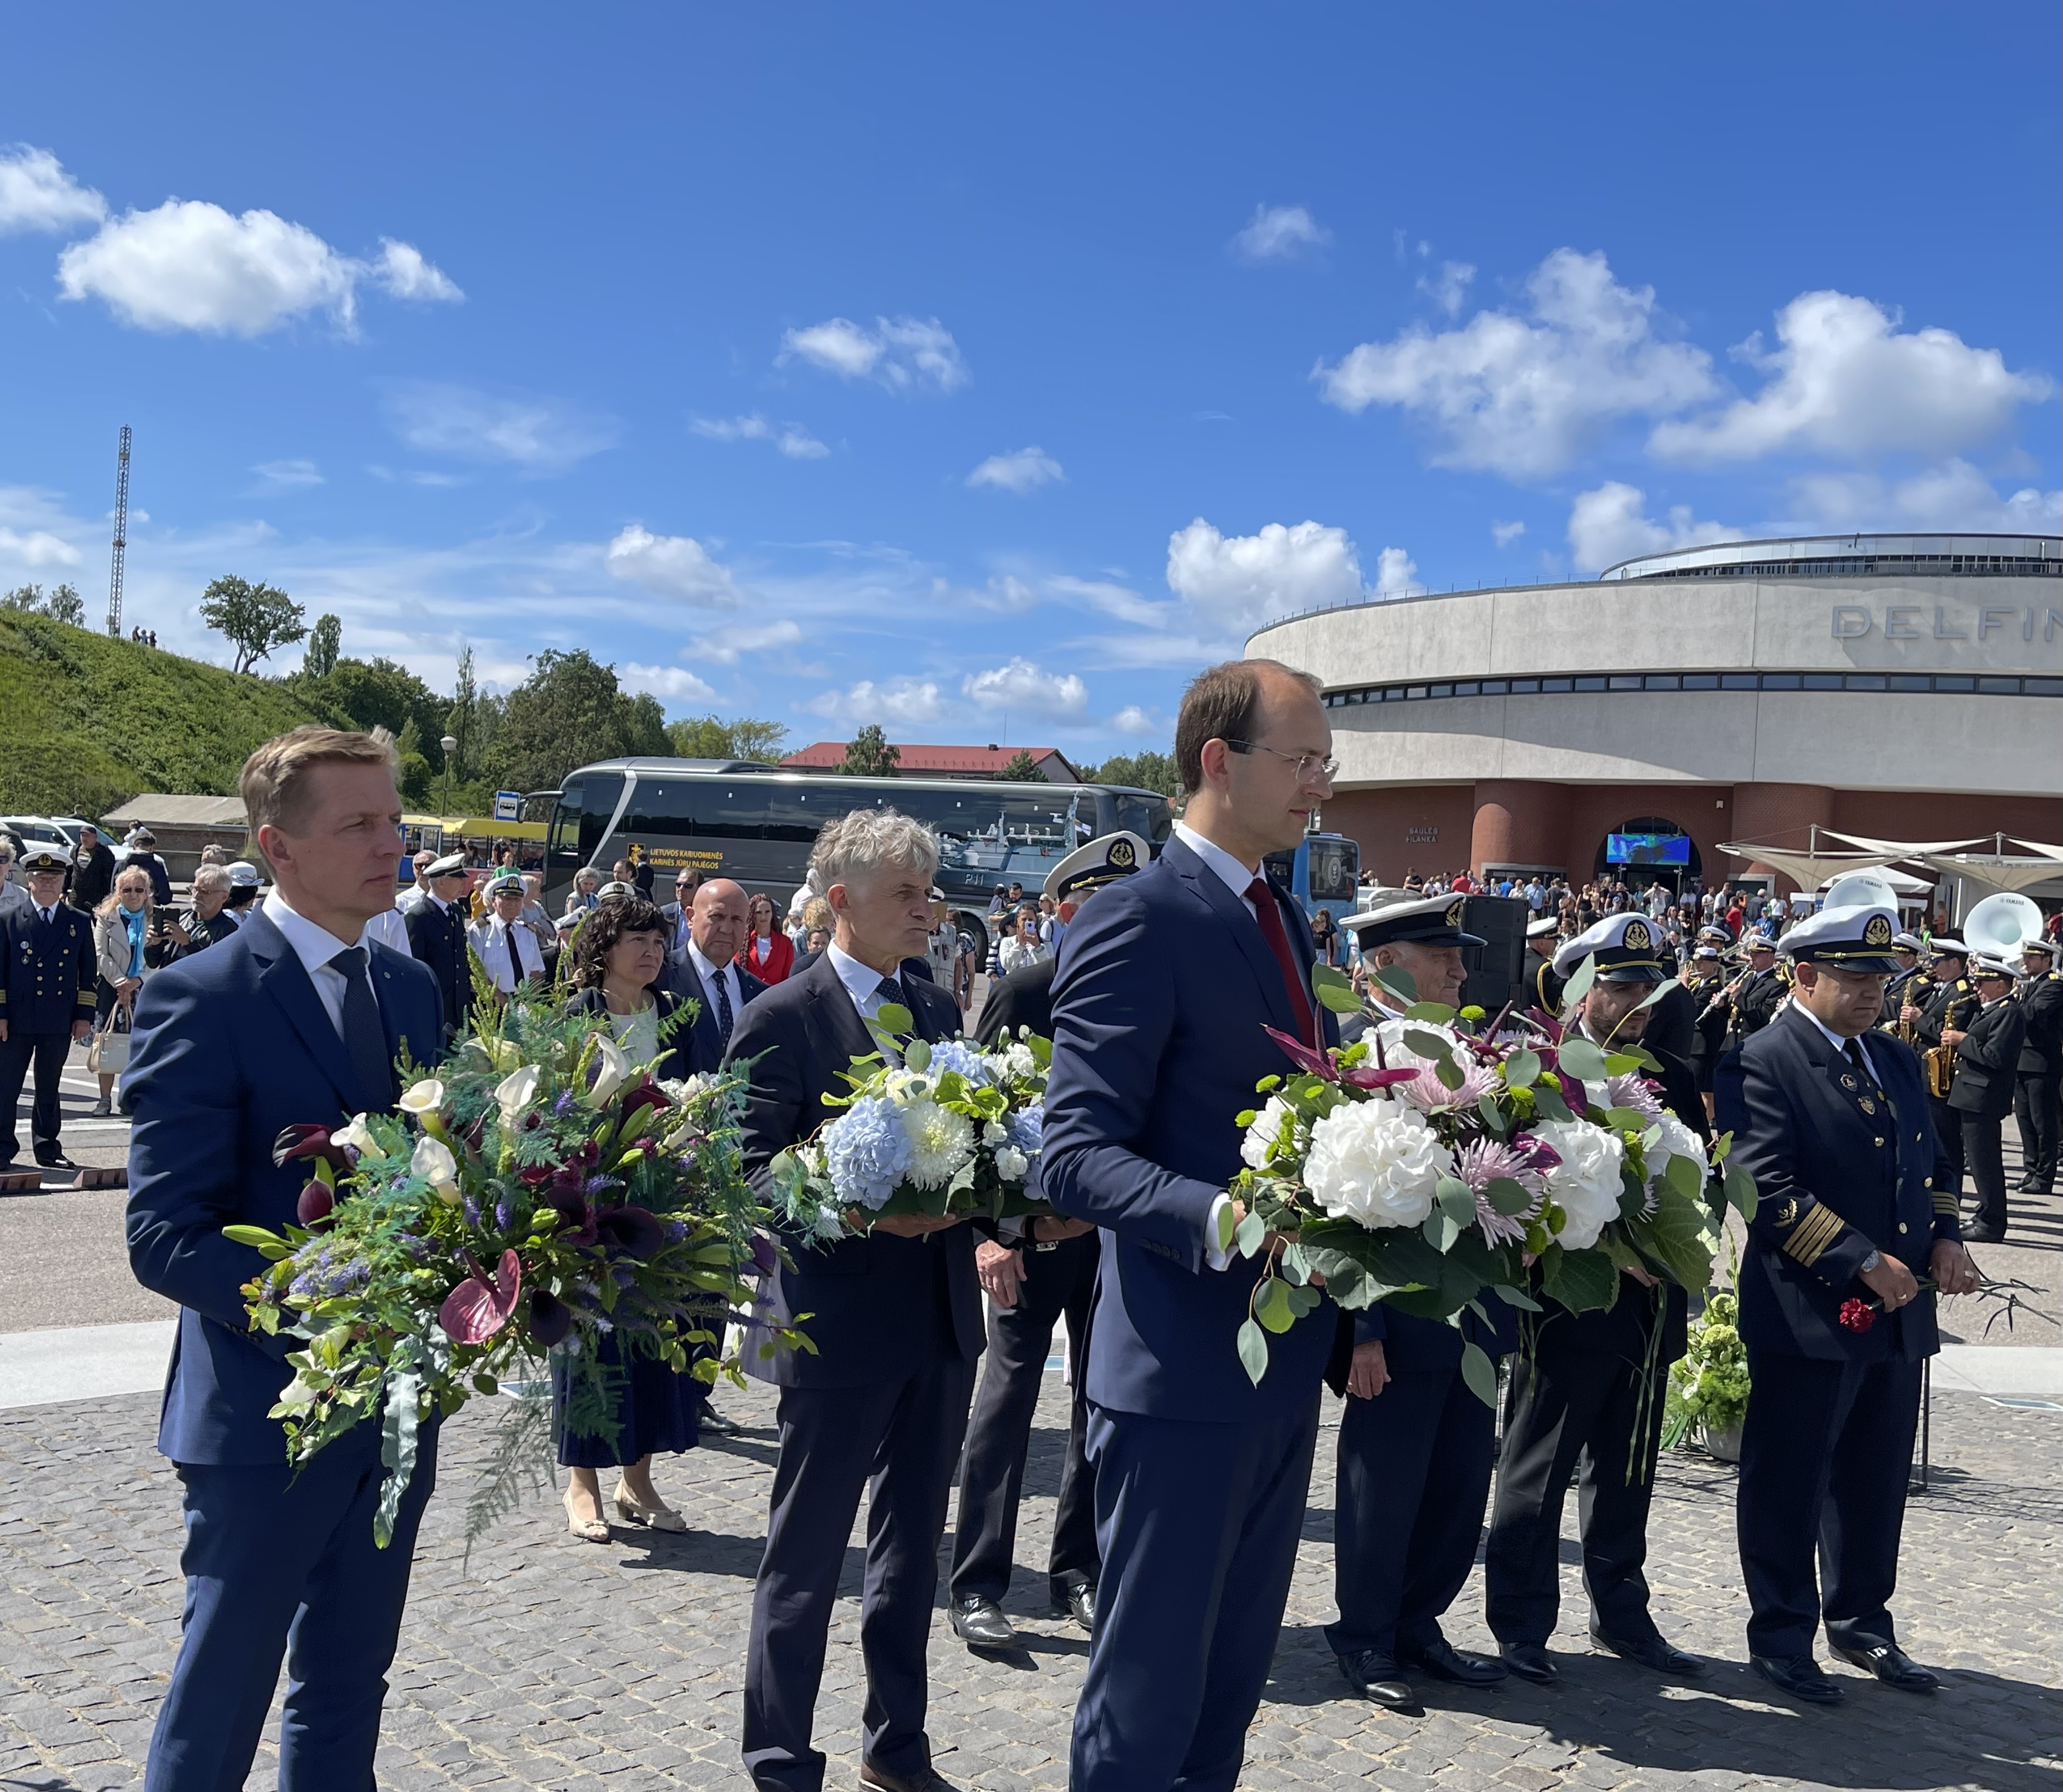 Pasitinkant Jūros šventę pagarba jūrą Lietuvai atvėrusiems ir uosto bendruomenei | Klaipėdos valstybinio jūrų uosto direkcijos nuotr.